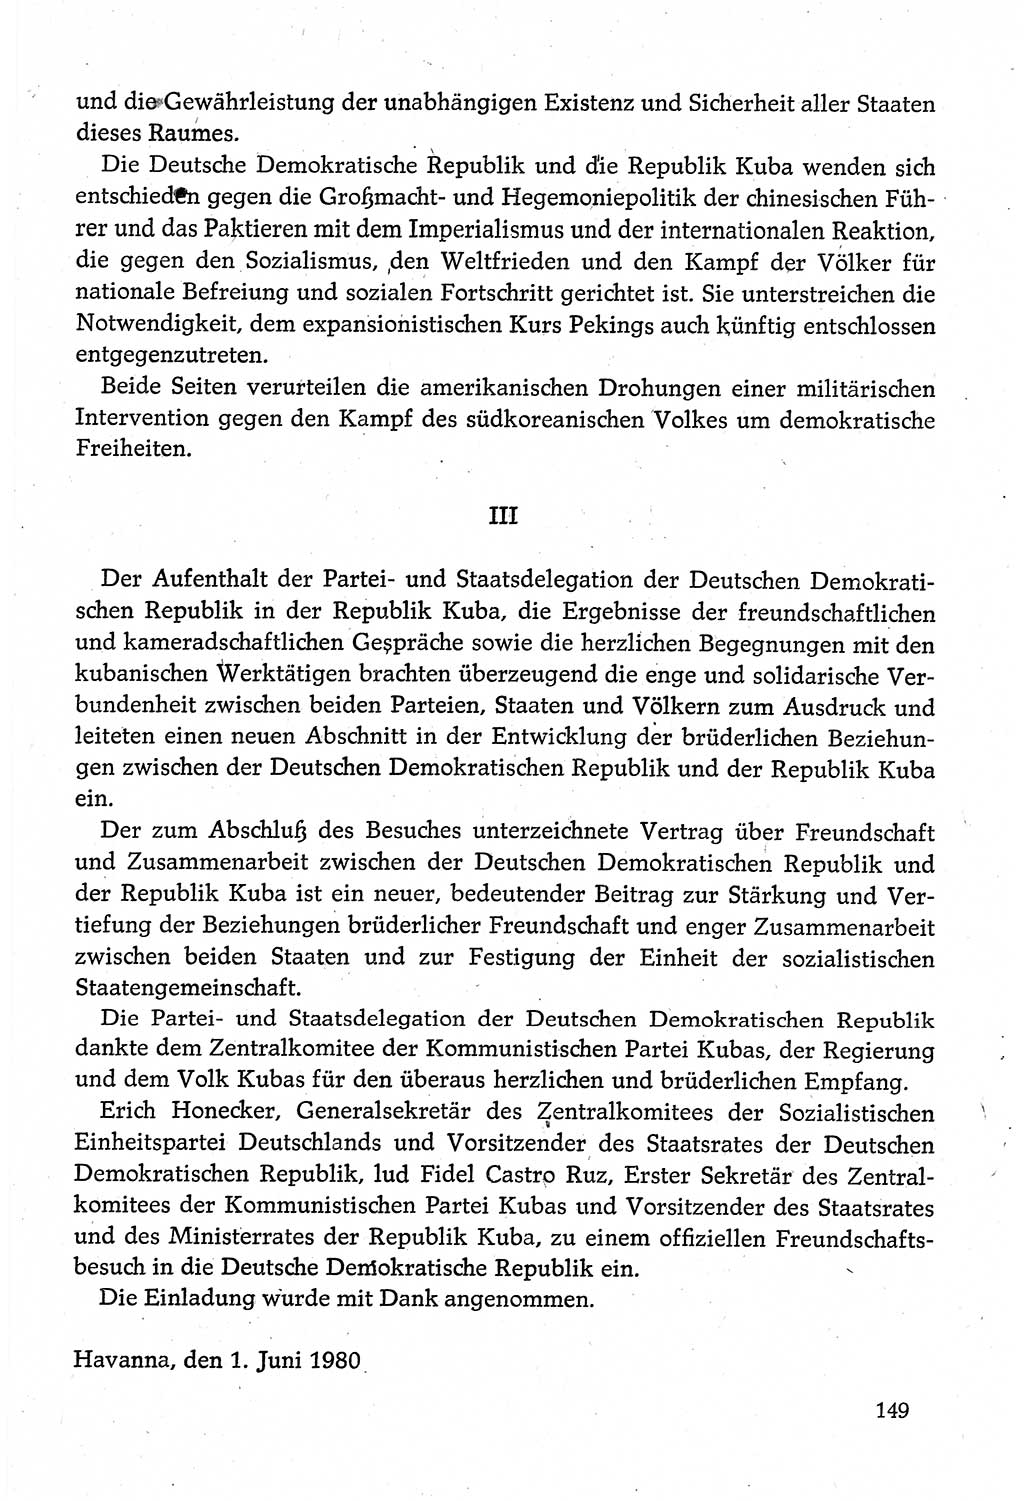 Dokumente der Sozialistischen Einheitspartei Deutschlands (SED) [Deutsche Demokratische Republik (DDR)] 1980-1981, Seite 149 (Dok. SED DDR 1980-1981, S. 149)